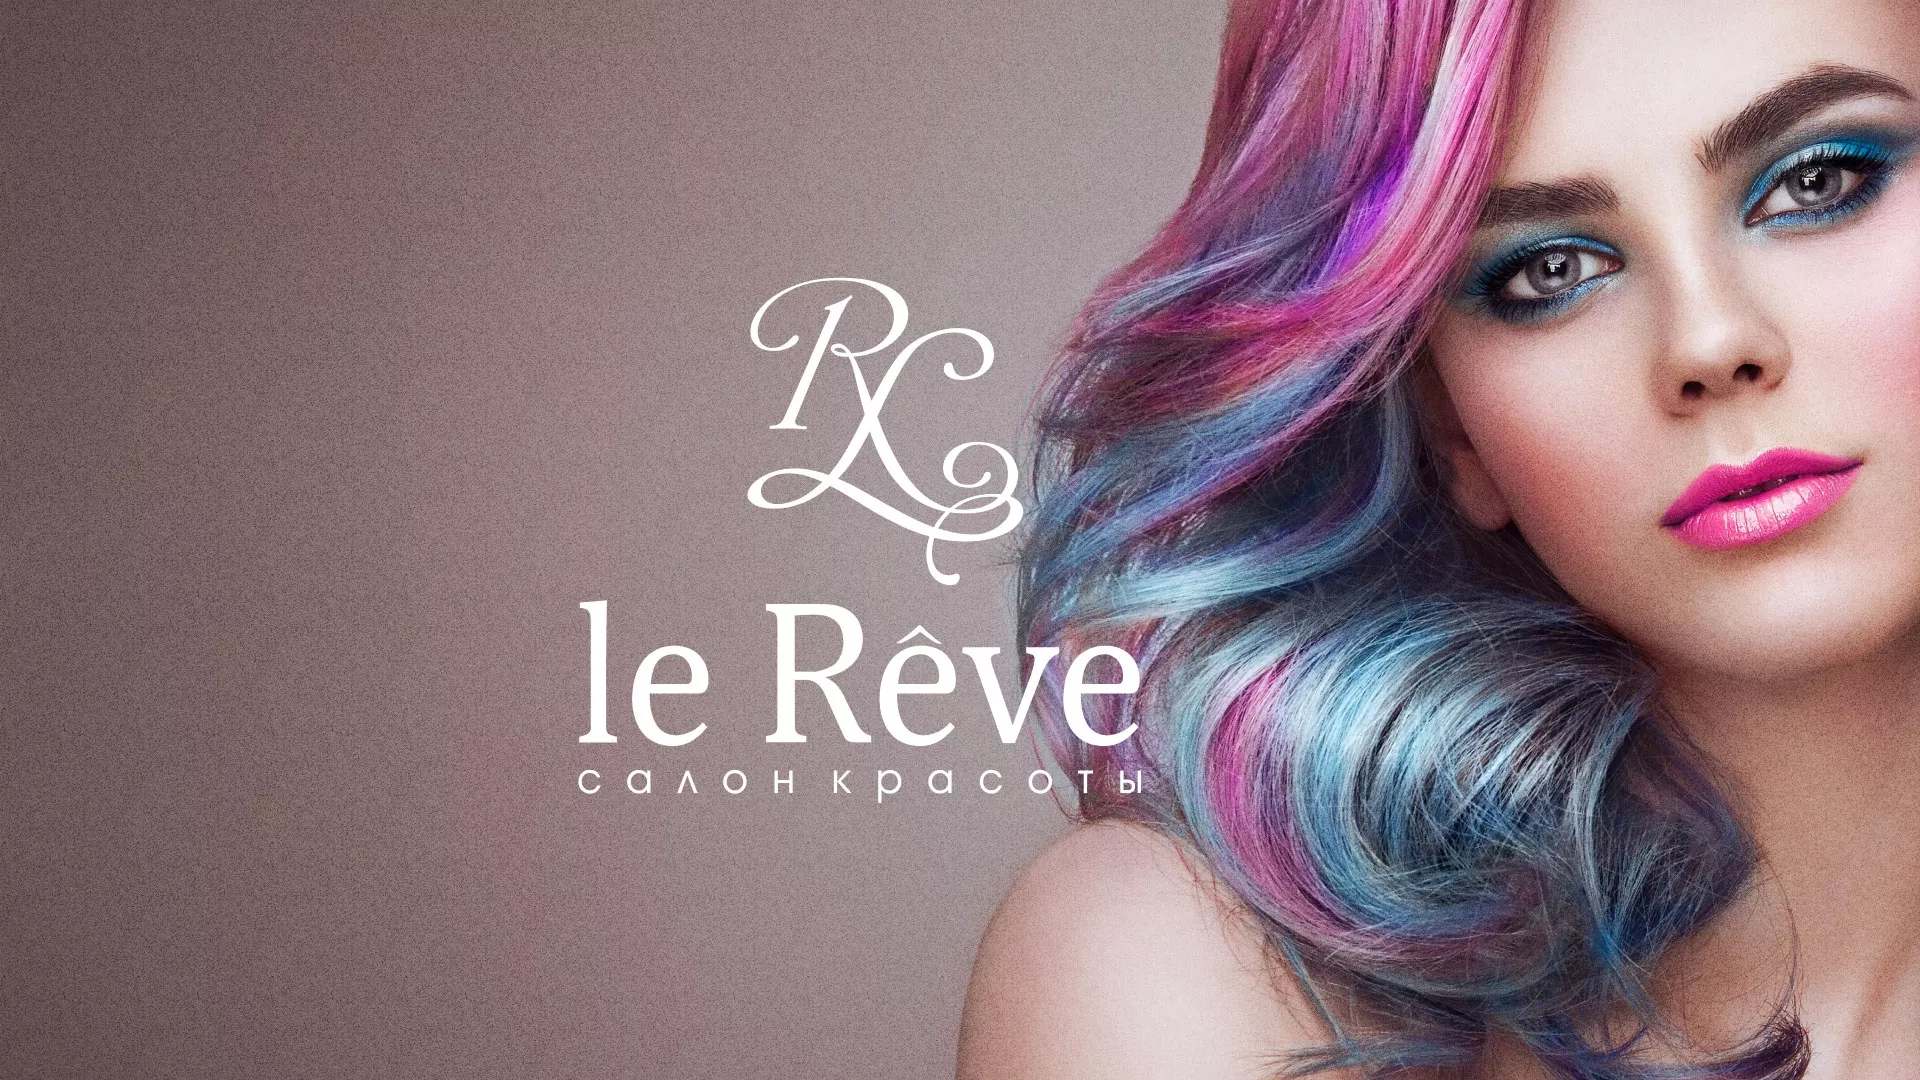 Создание сайта для салона красоты «Le Reve» в Суздале